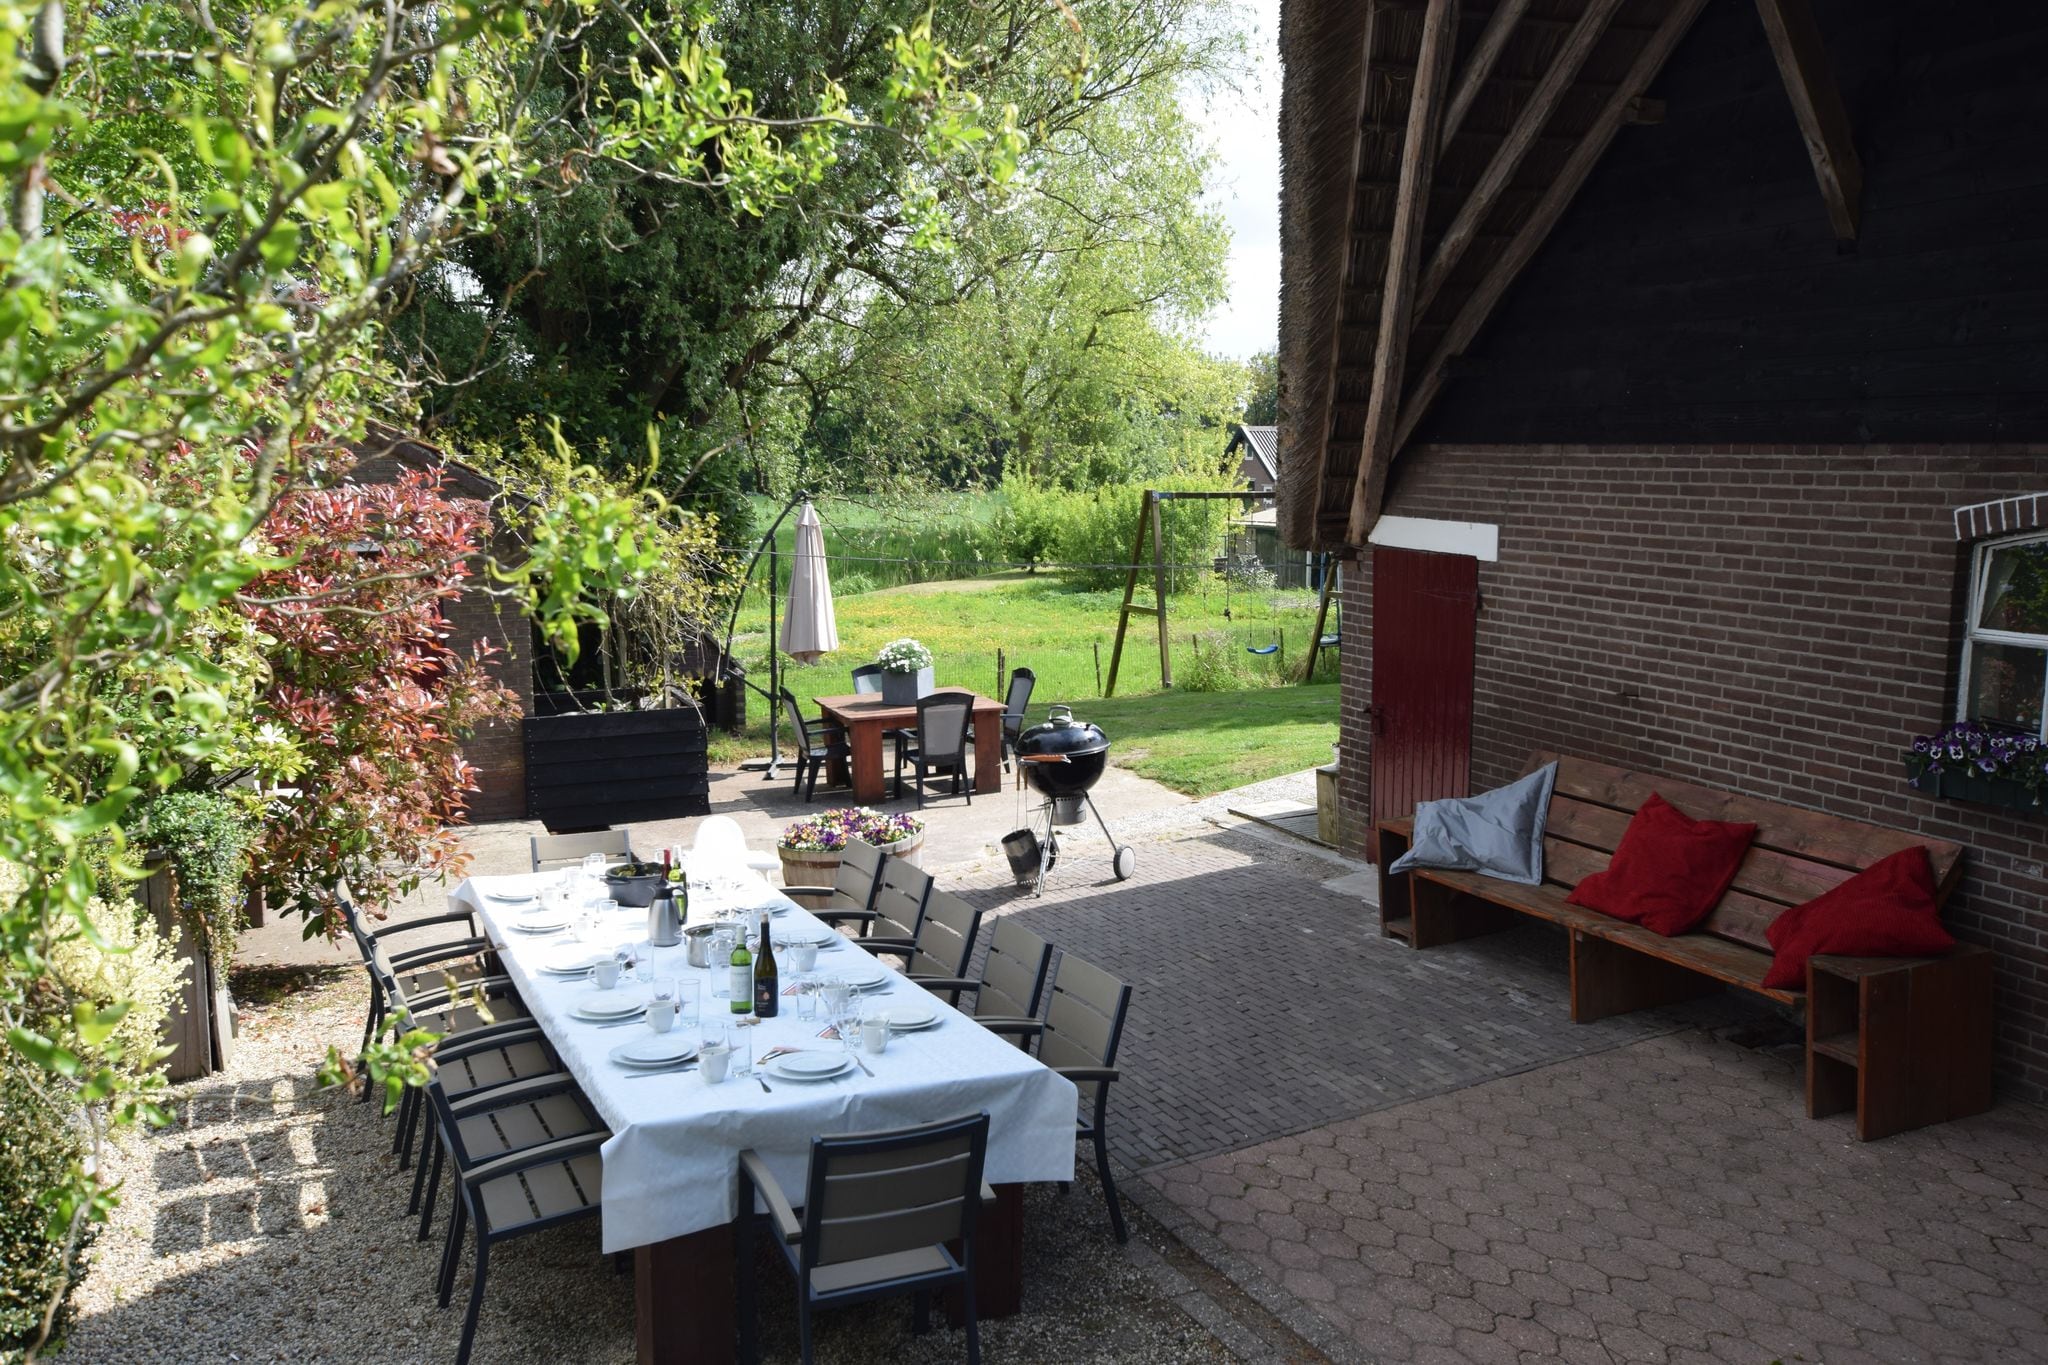 Rietgekapte vakantieboerderwij bij Leerdam met tuin en terras